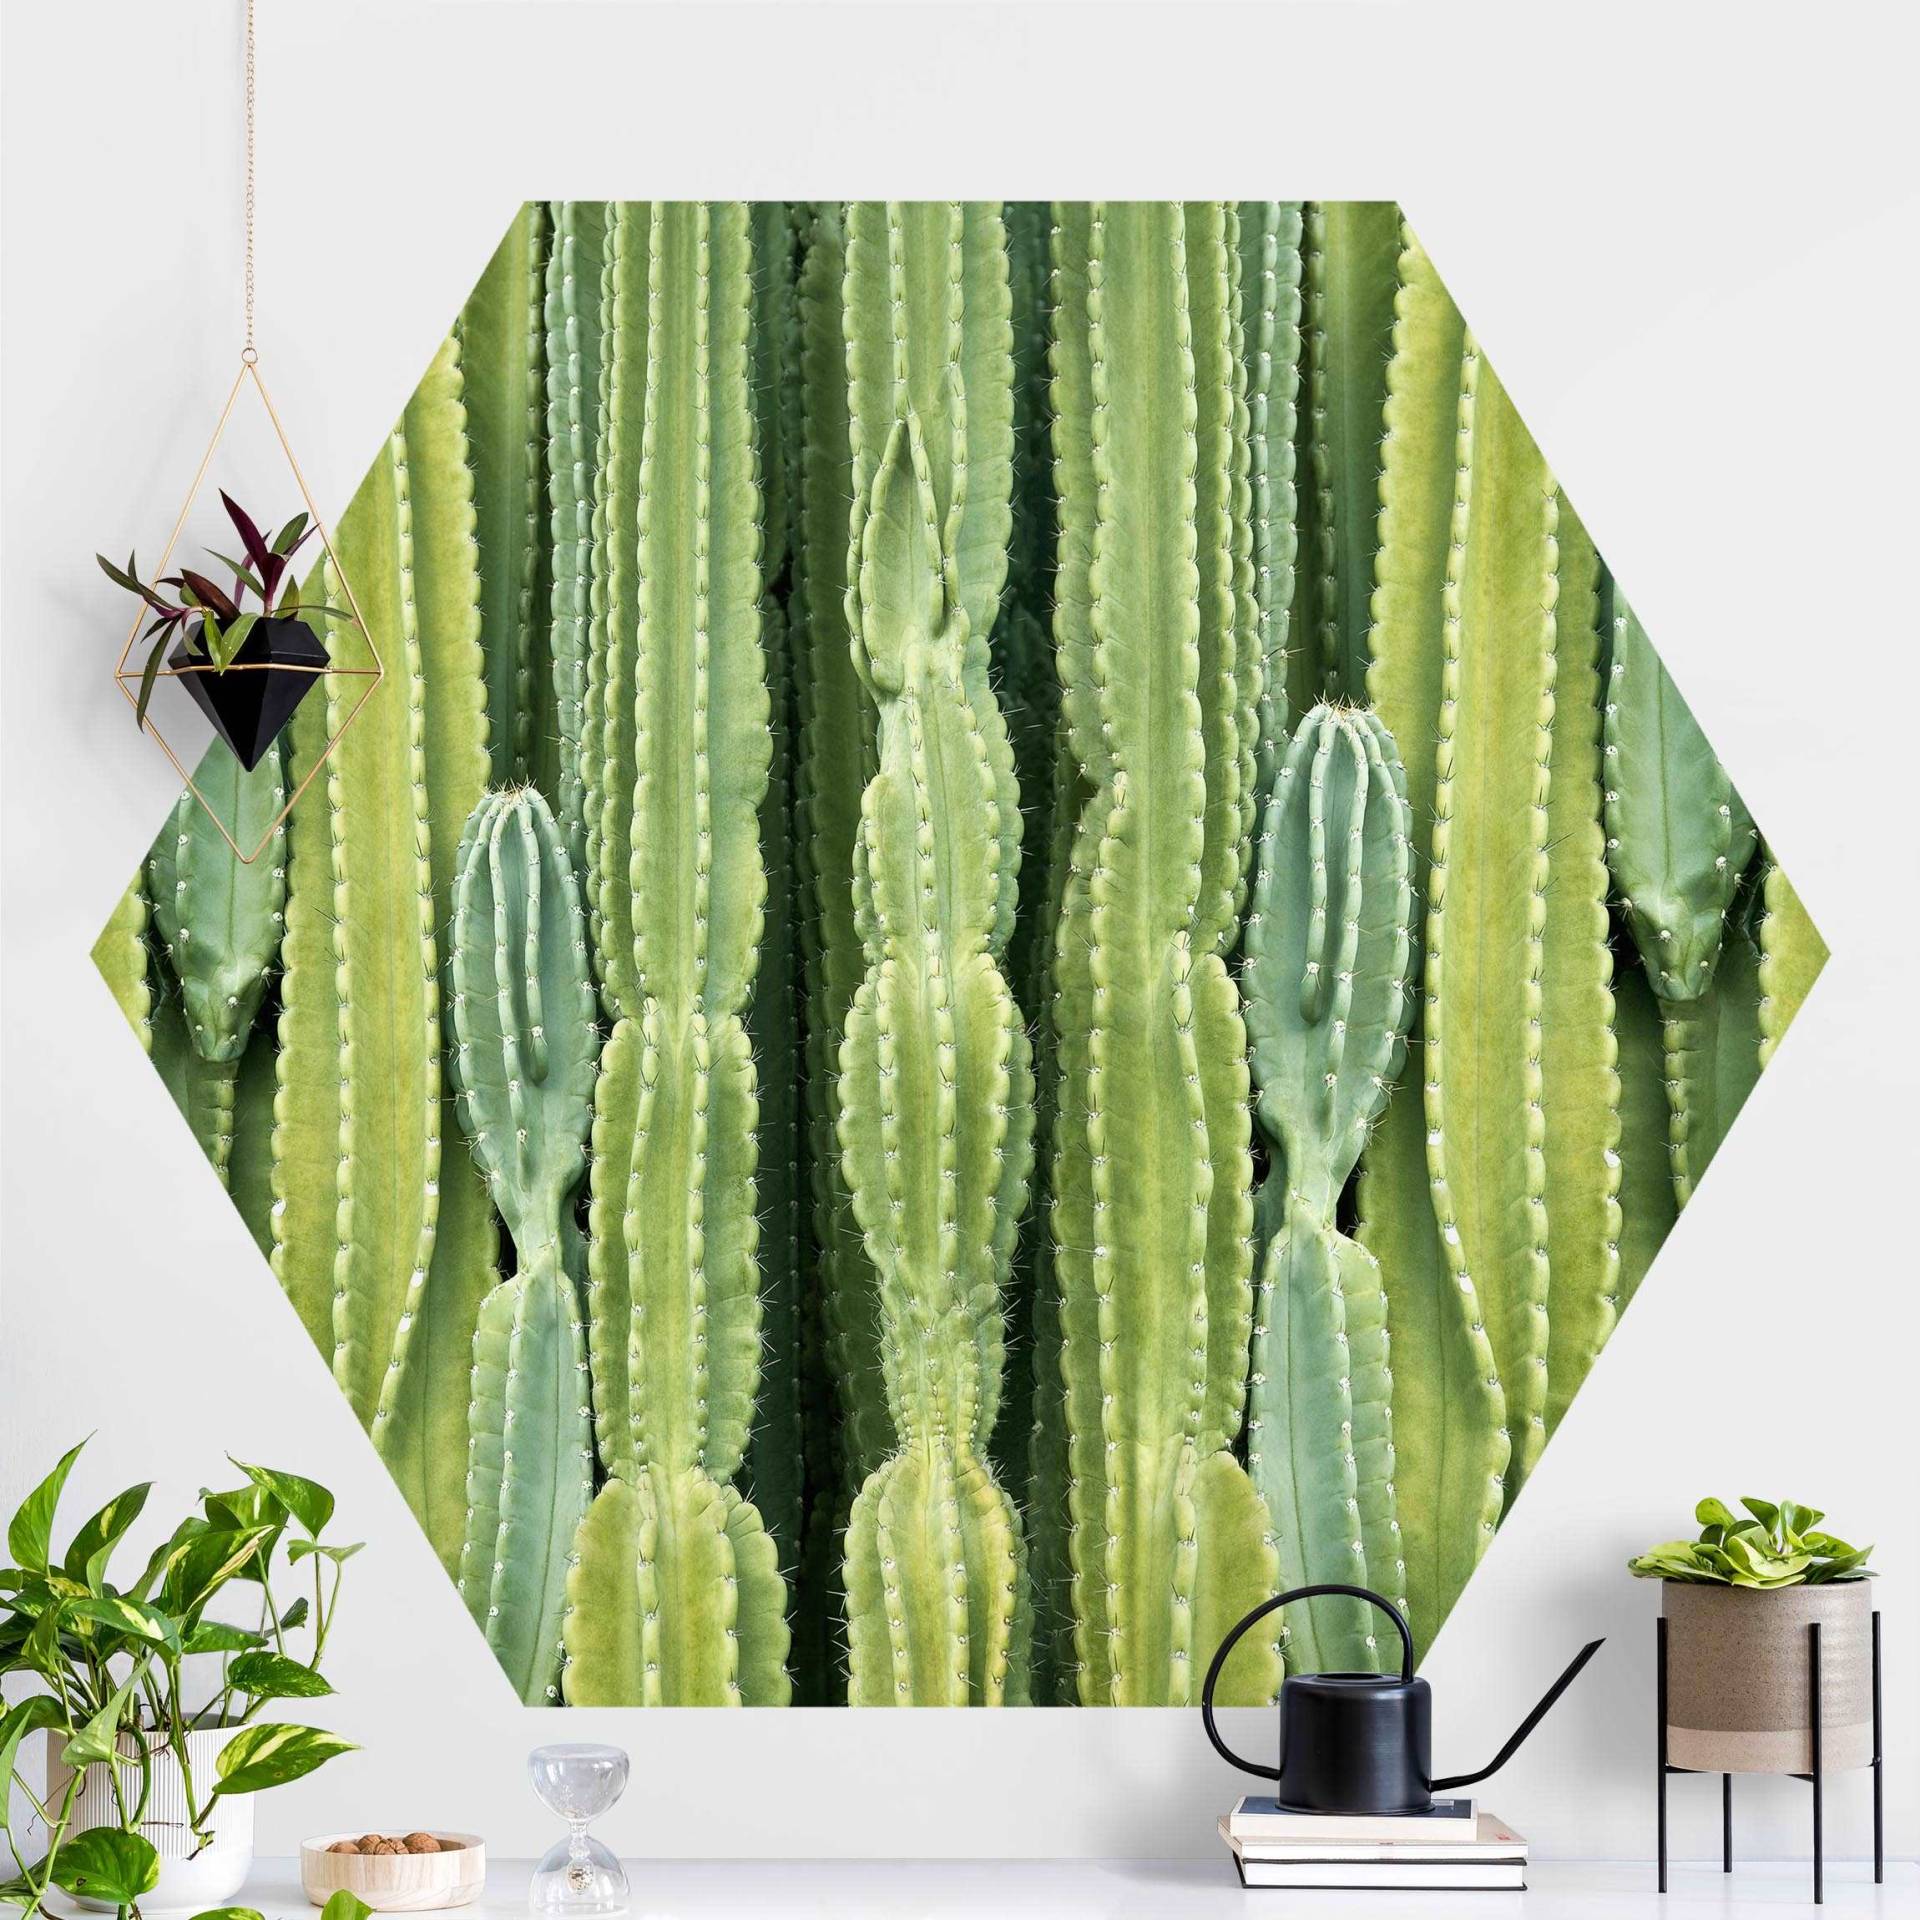 Hexagon Fototapete selbstklebend Kaktus Wand von Klebefieber